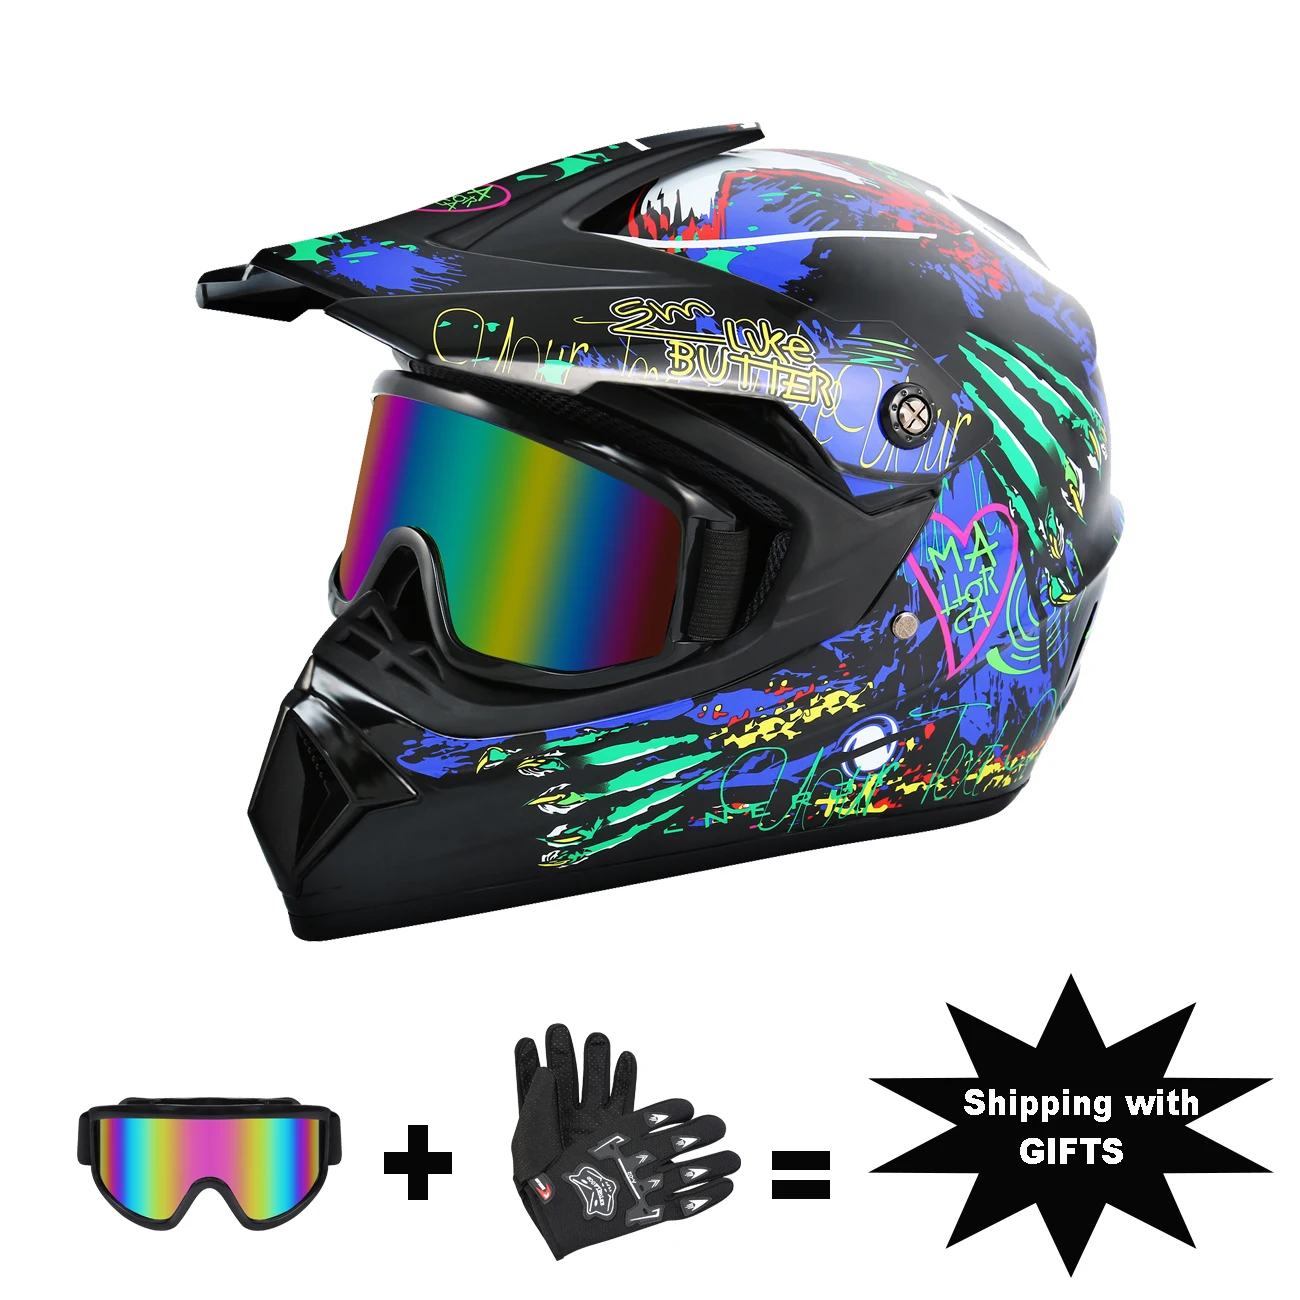 Honhill Off Road Motorcycle Helmet Full Face W/Goggle Gloves Professional Motocross Helmet For Dirt Bike ATV Glossy Black